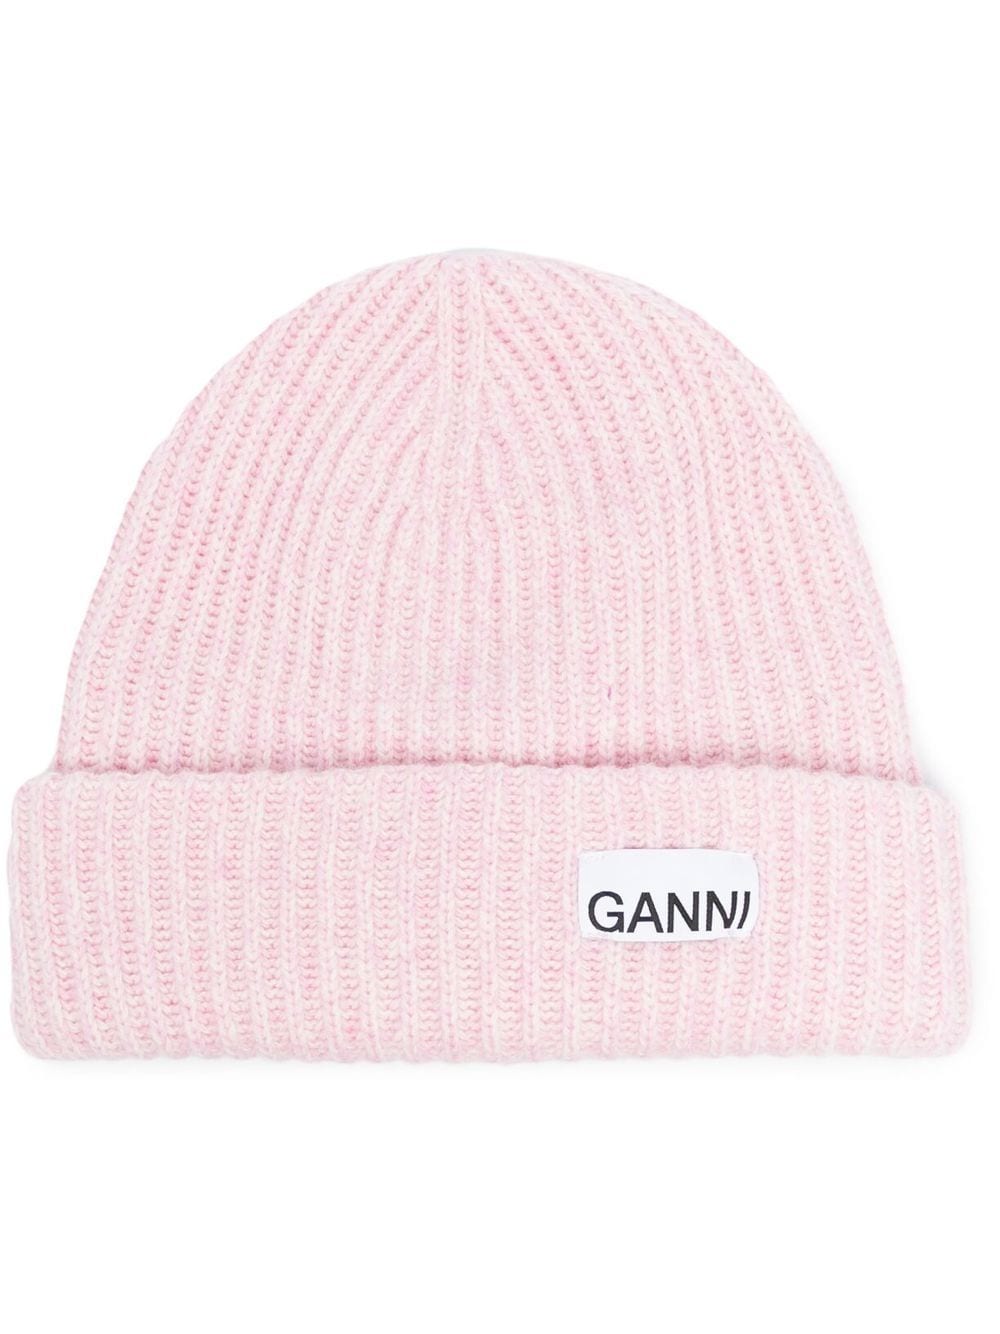 Ganni GANNI- Logo Wool Beanie